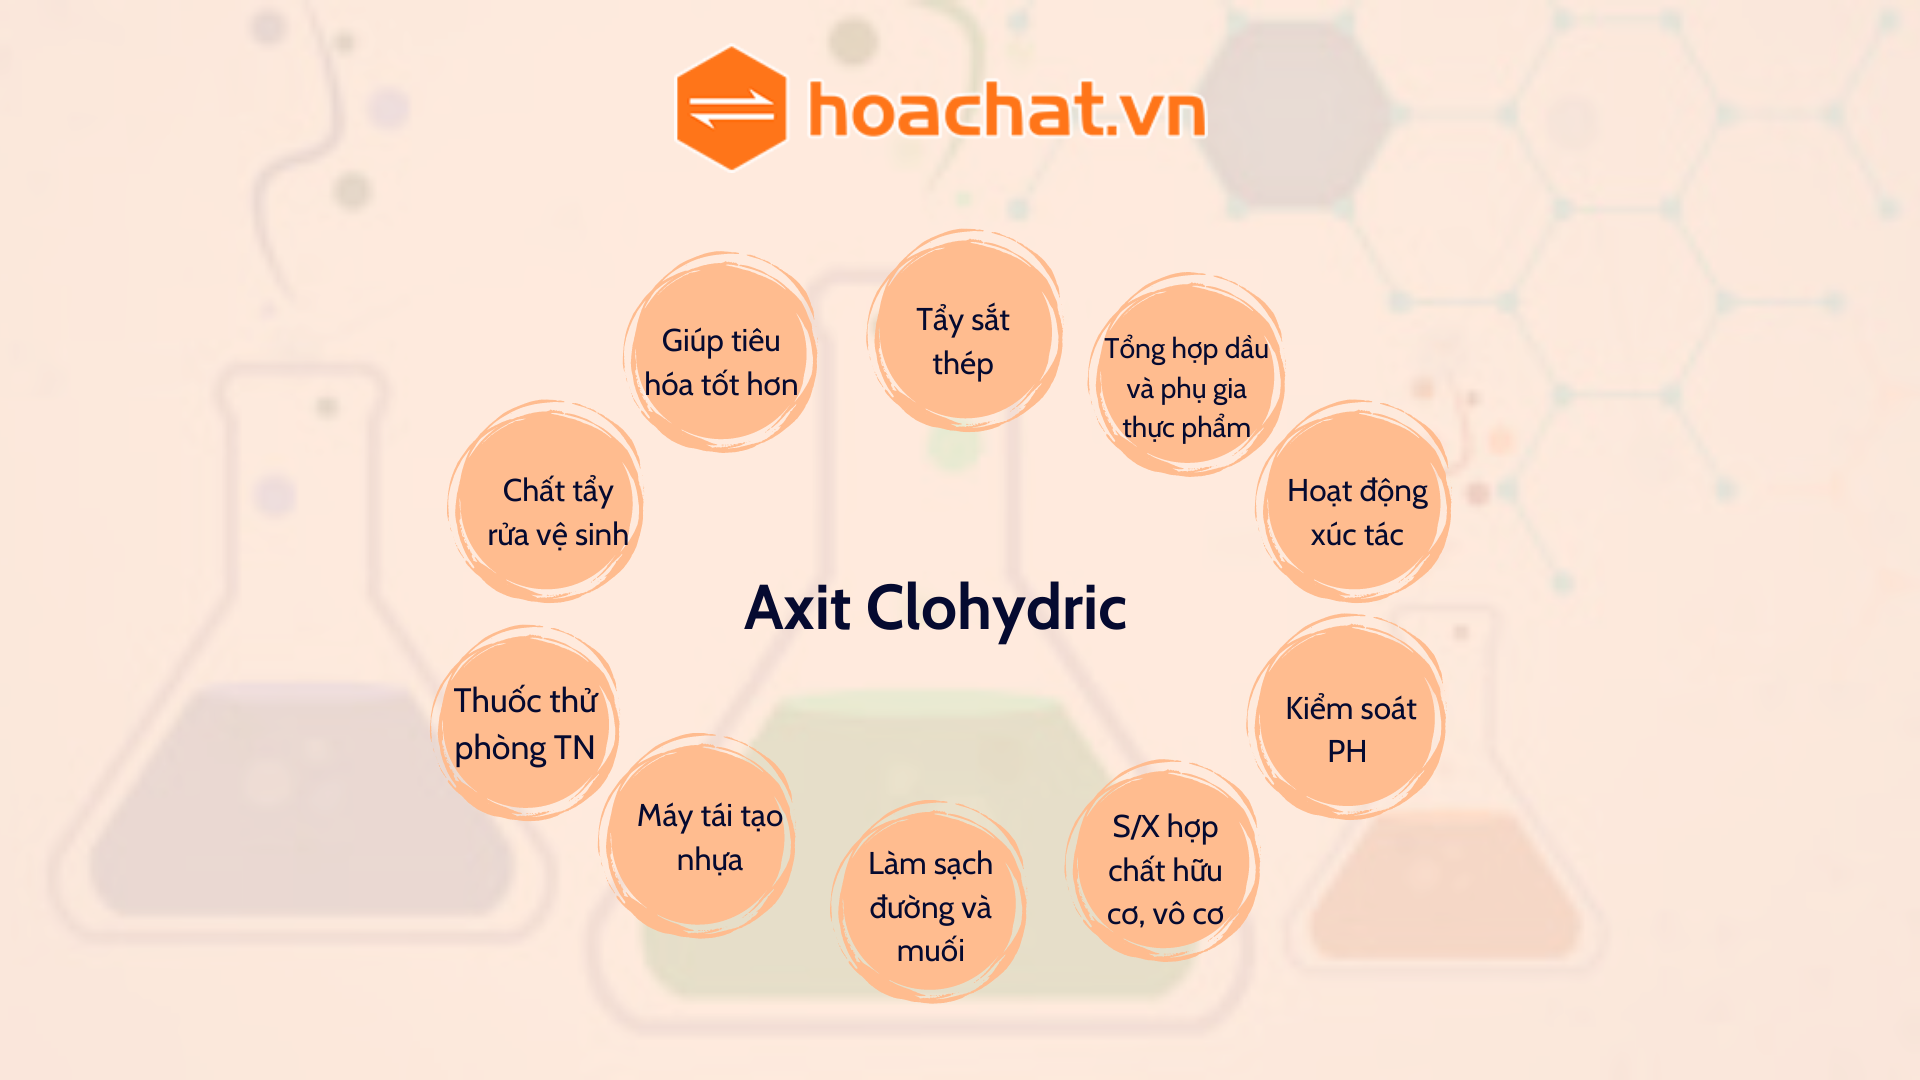 Công dụng của Axit clohydric: Các ứng dụng phổ biến và công nghiệp